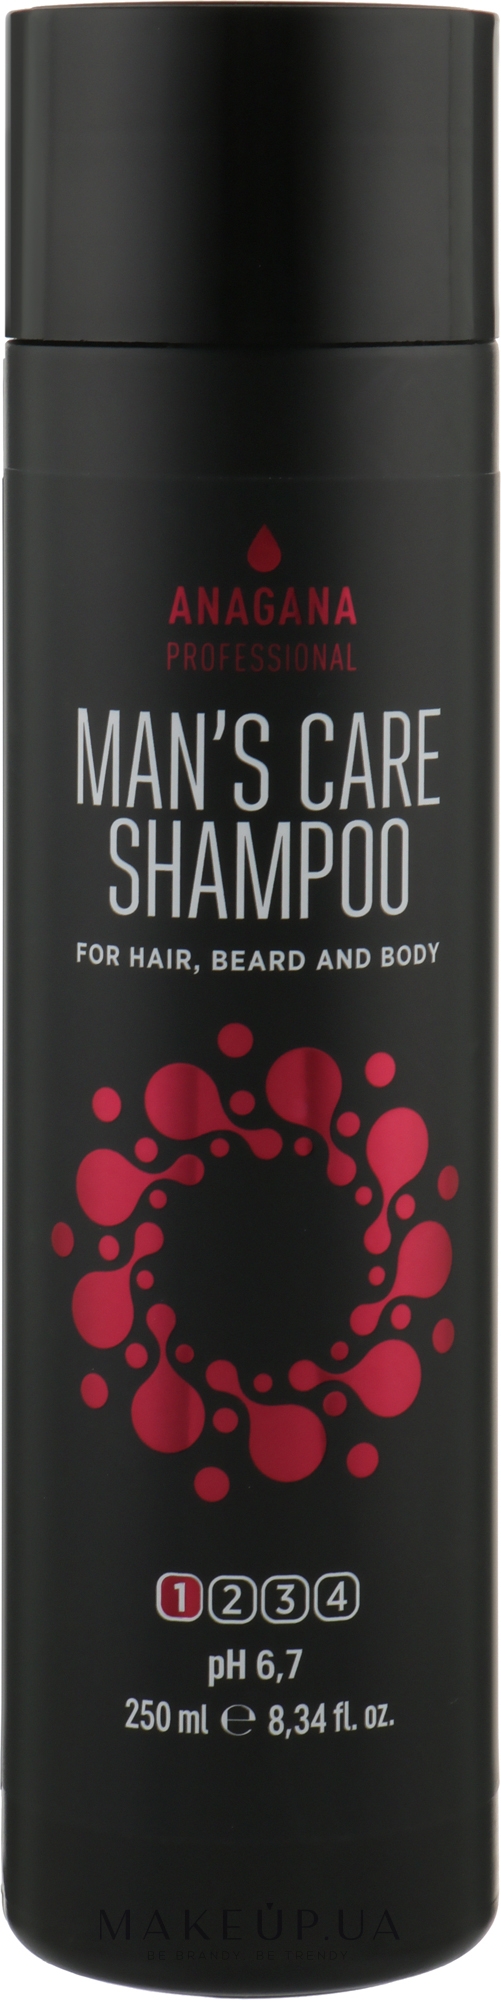 Шампунь "Чоловічий догляд" для волосся, бороди й тіла - Anagana Professional Man's Care Shampoo — фото 250ml